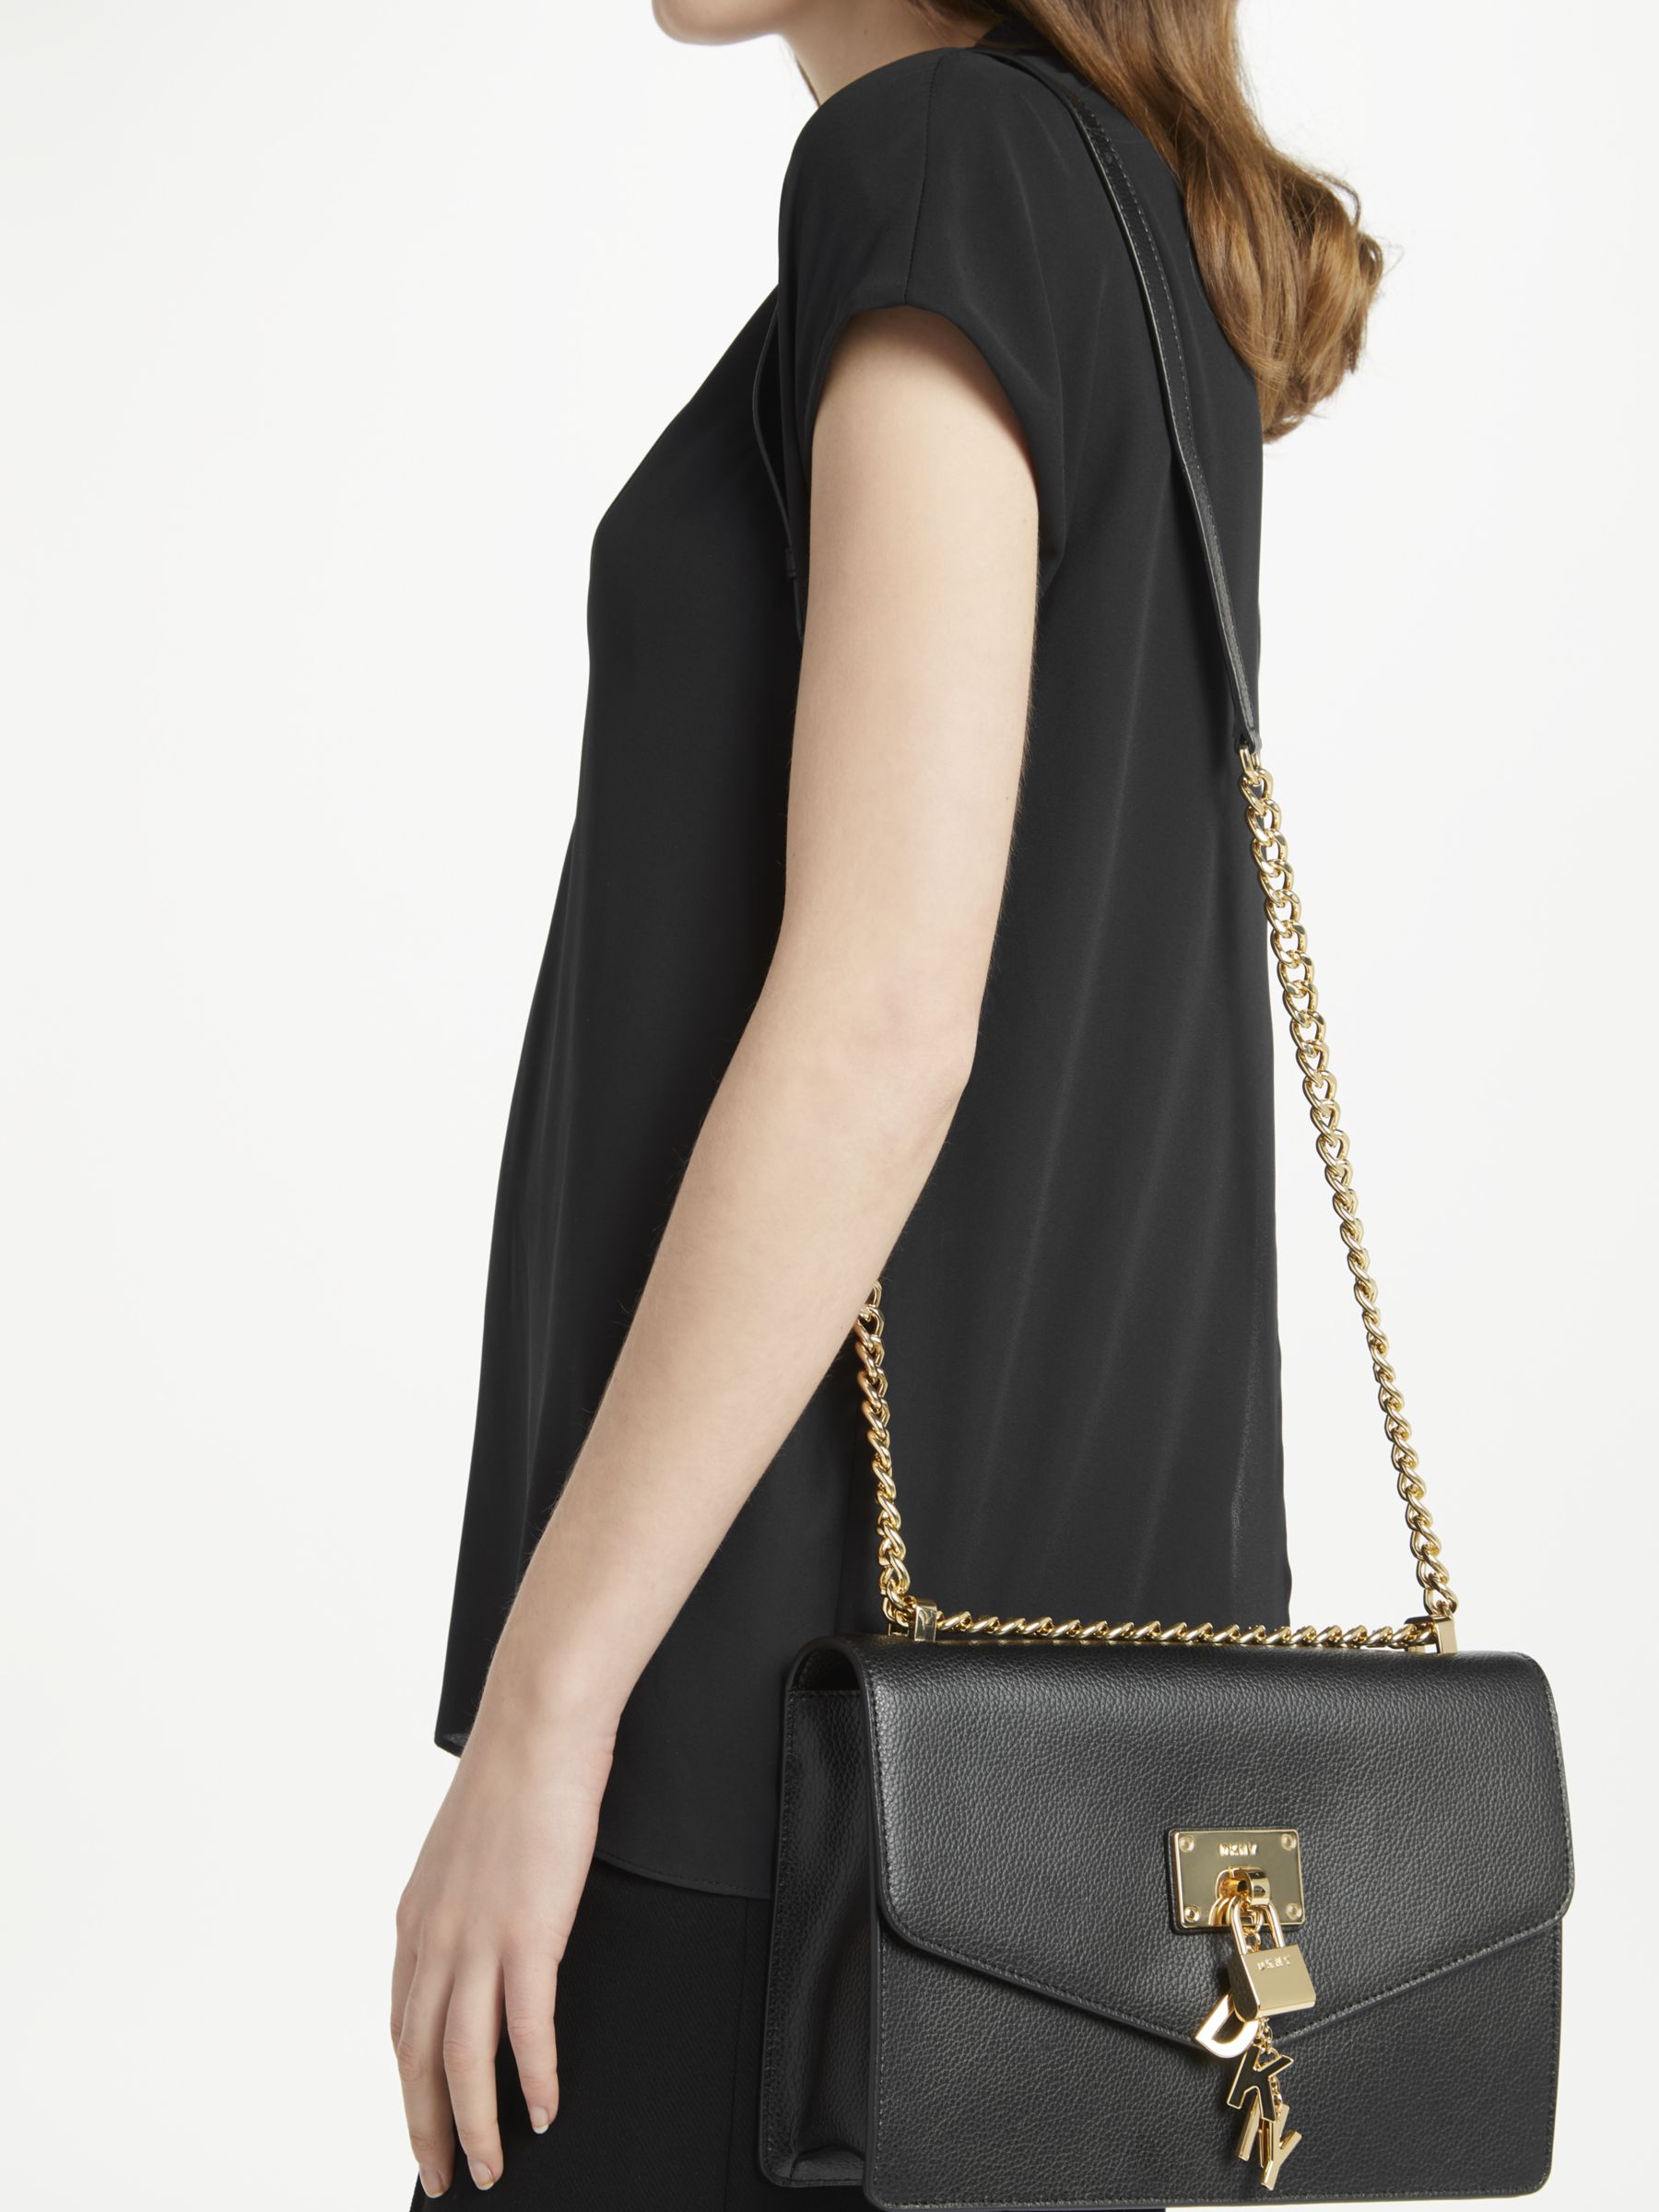 Dkny Elissa Small Leather Flap Shoulder Bag Black/Gold